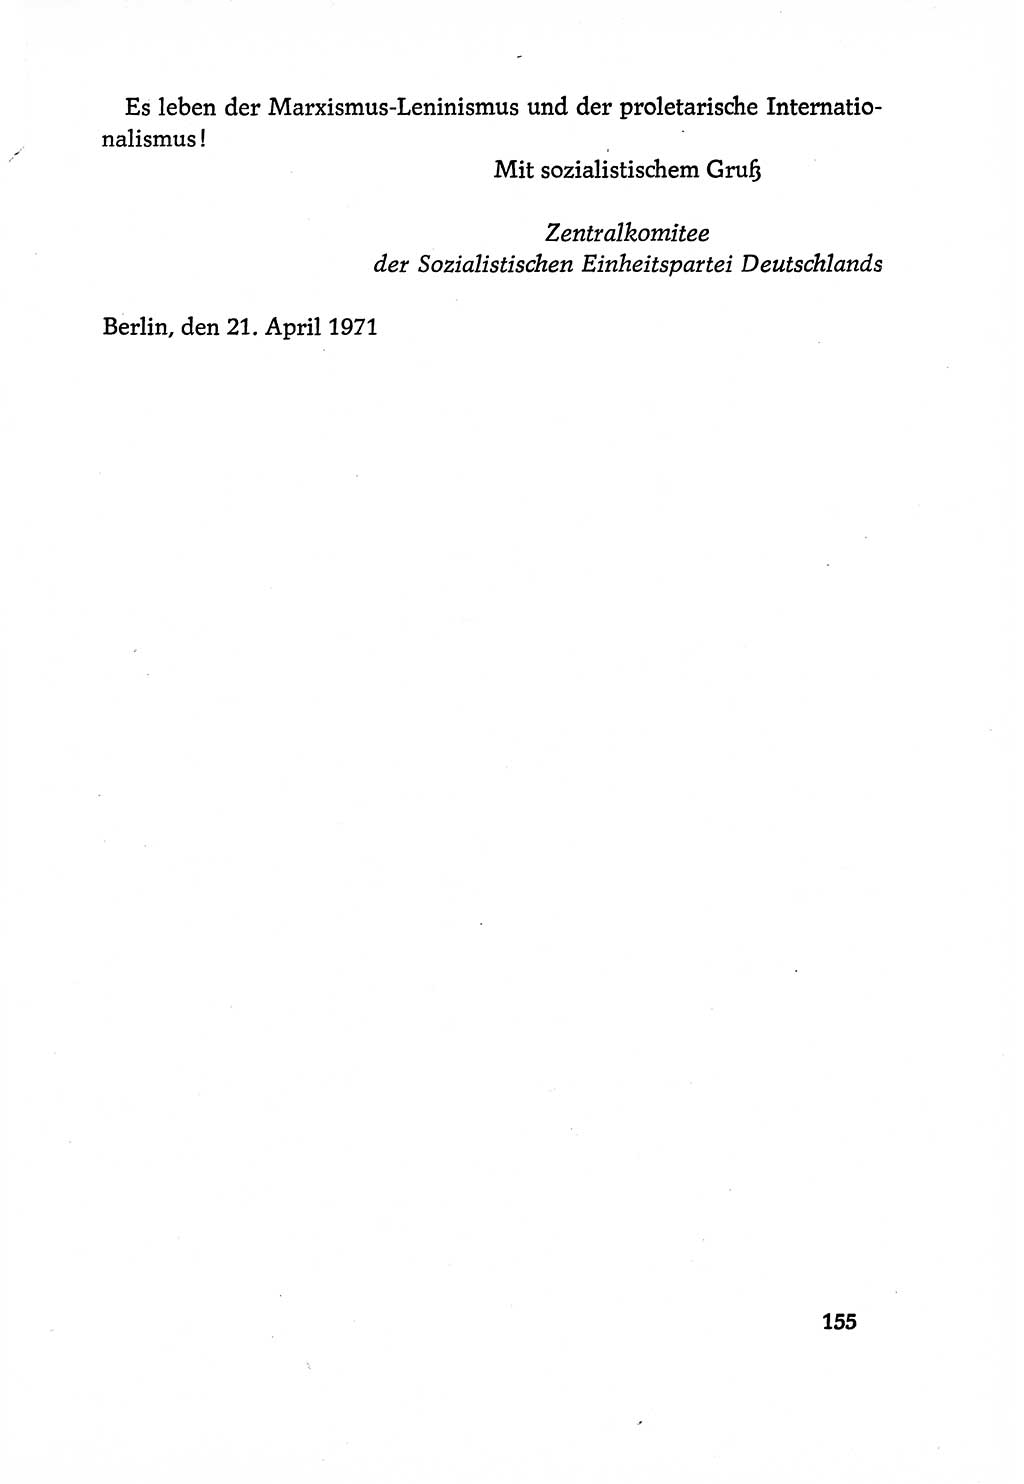 Dokumente der Sozialistischen Einheitspartei Deutschlands (SED) [Deutsche Demokratische Republik (DDR)] 1970-1971, Seite 155 (Dok. SED DDR 1970-1971, S. 155)